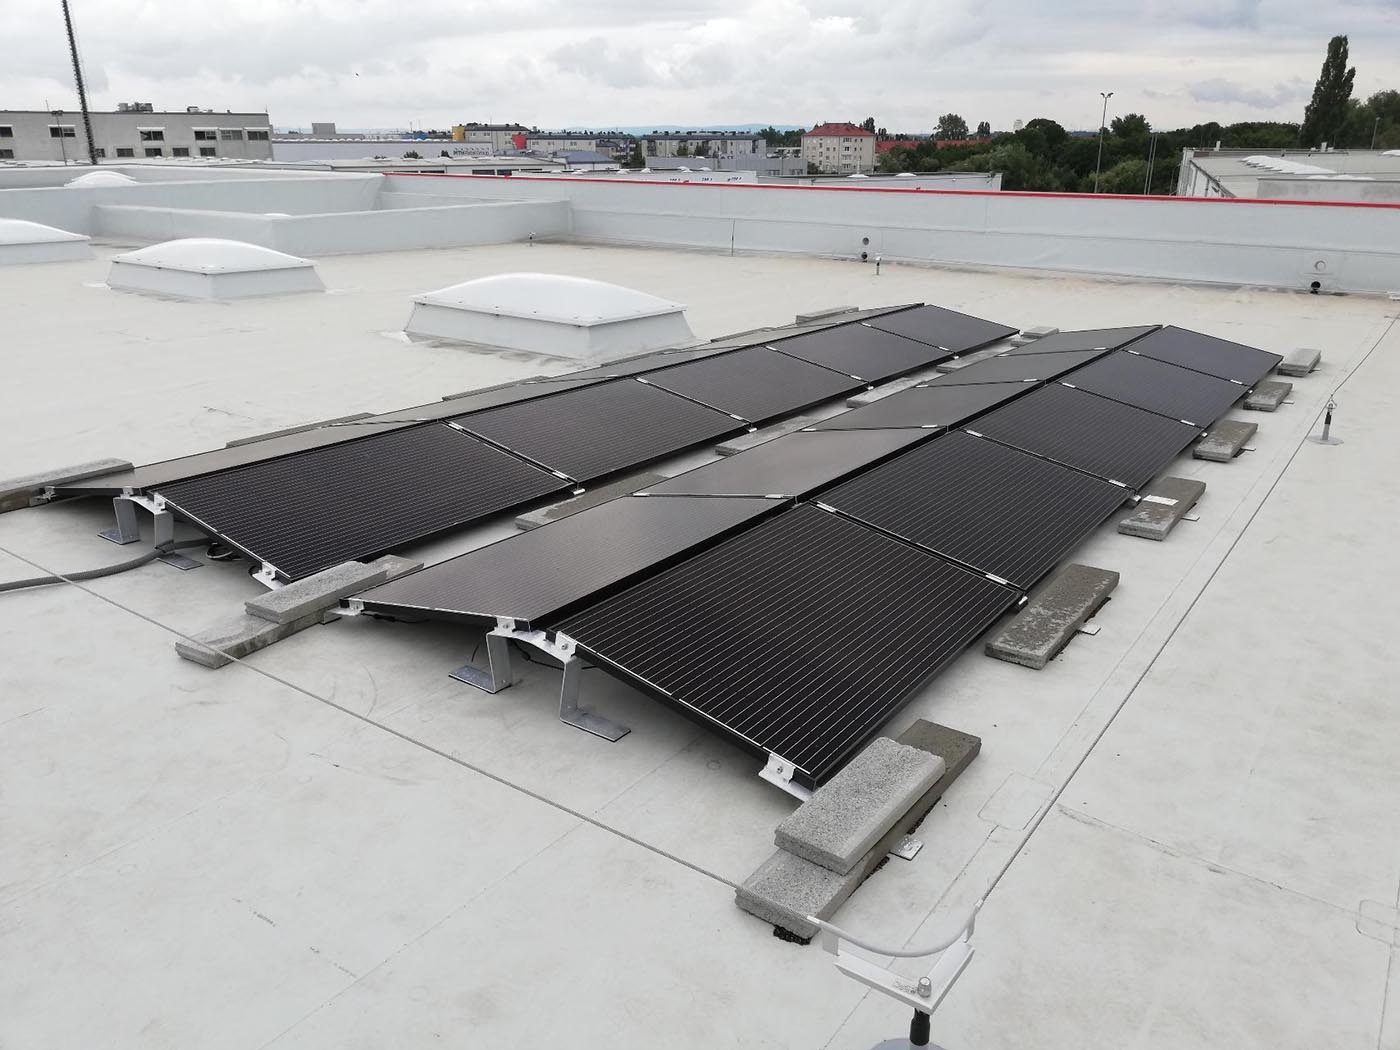 Metoda konserwacji systemu energii słonecznej typu grid-tie - konserwacja systemu: